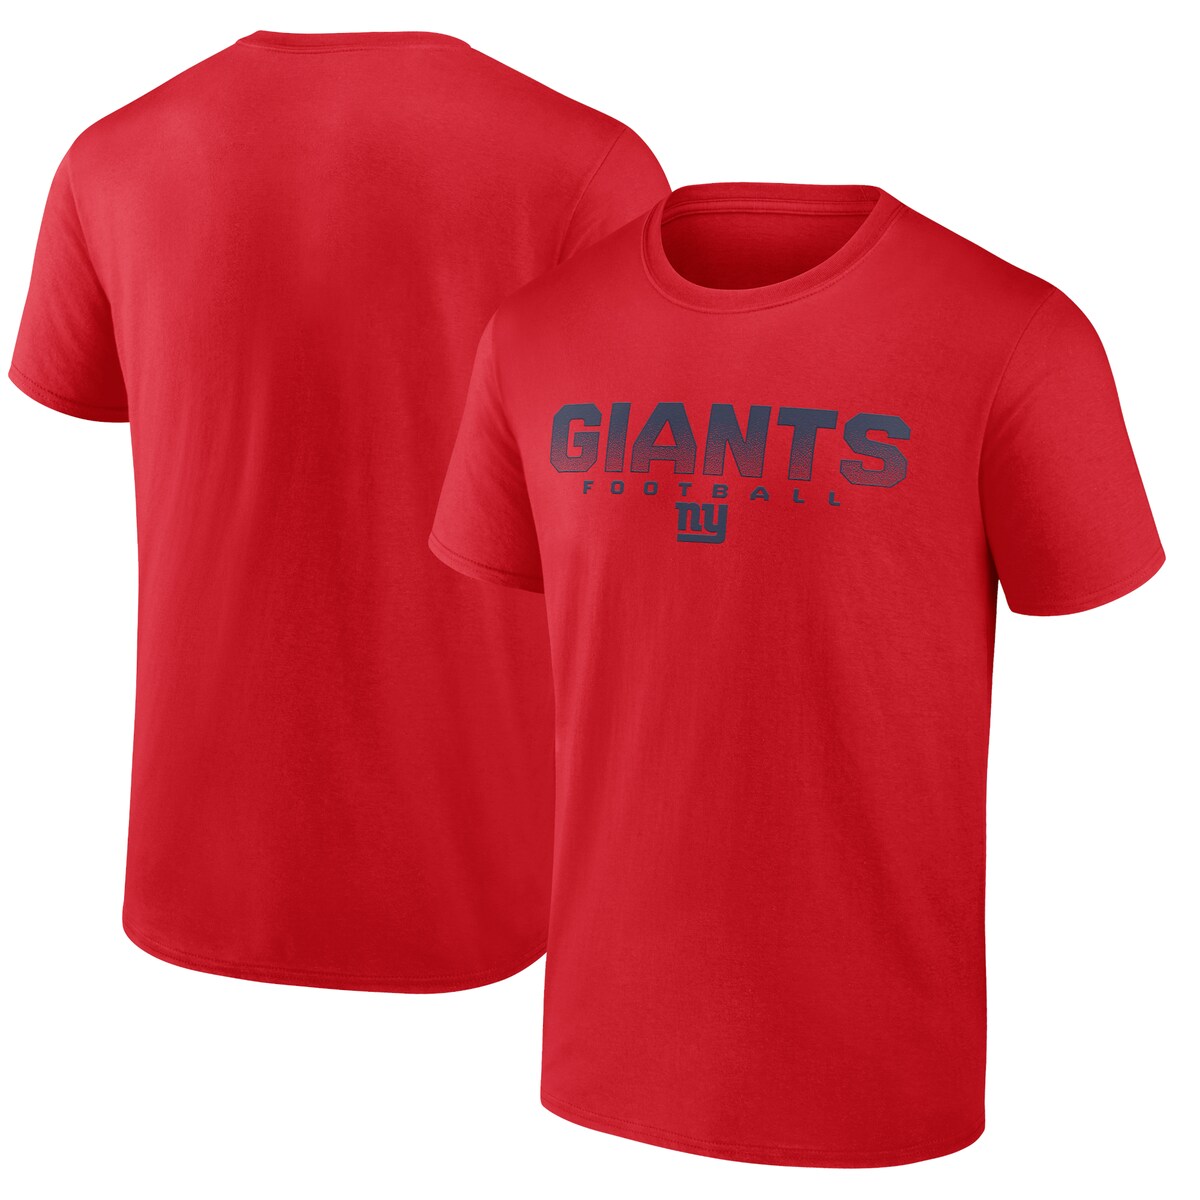 【公式グッズ】NFL ジャイアンツ Tシャツ Fanatics（ファナティクス） メンズ レッド (Men's Fanatics Branded Utility Player Short Sleeve Tee)